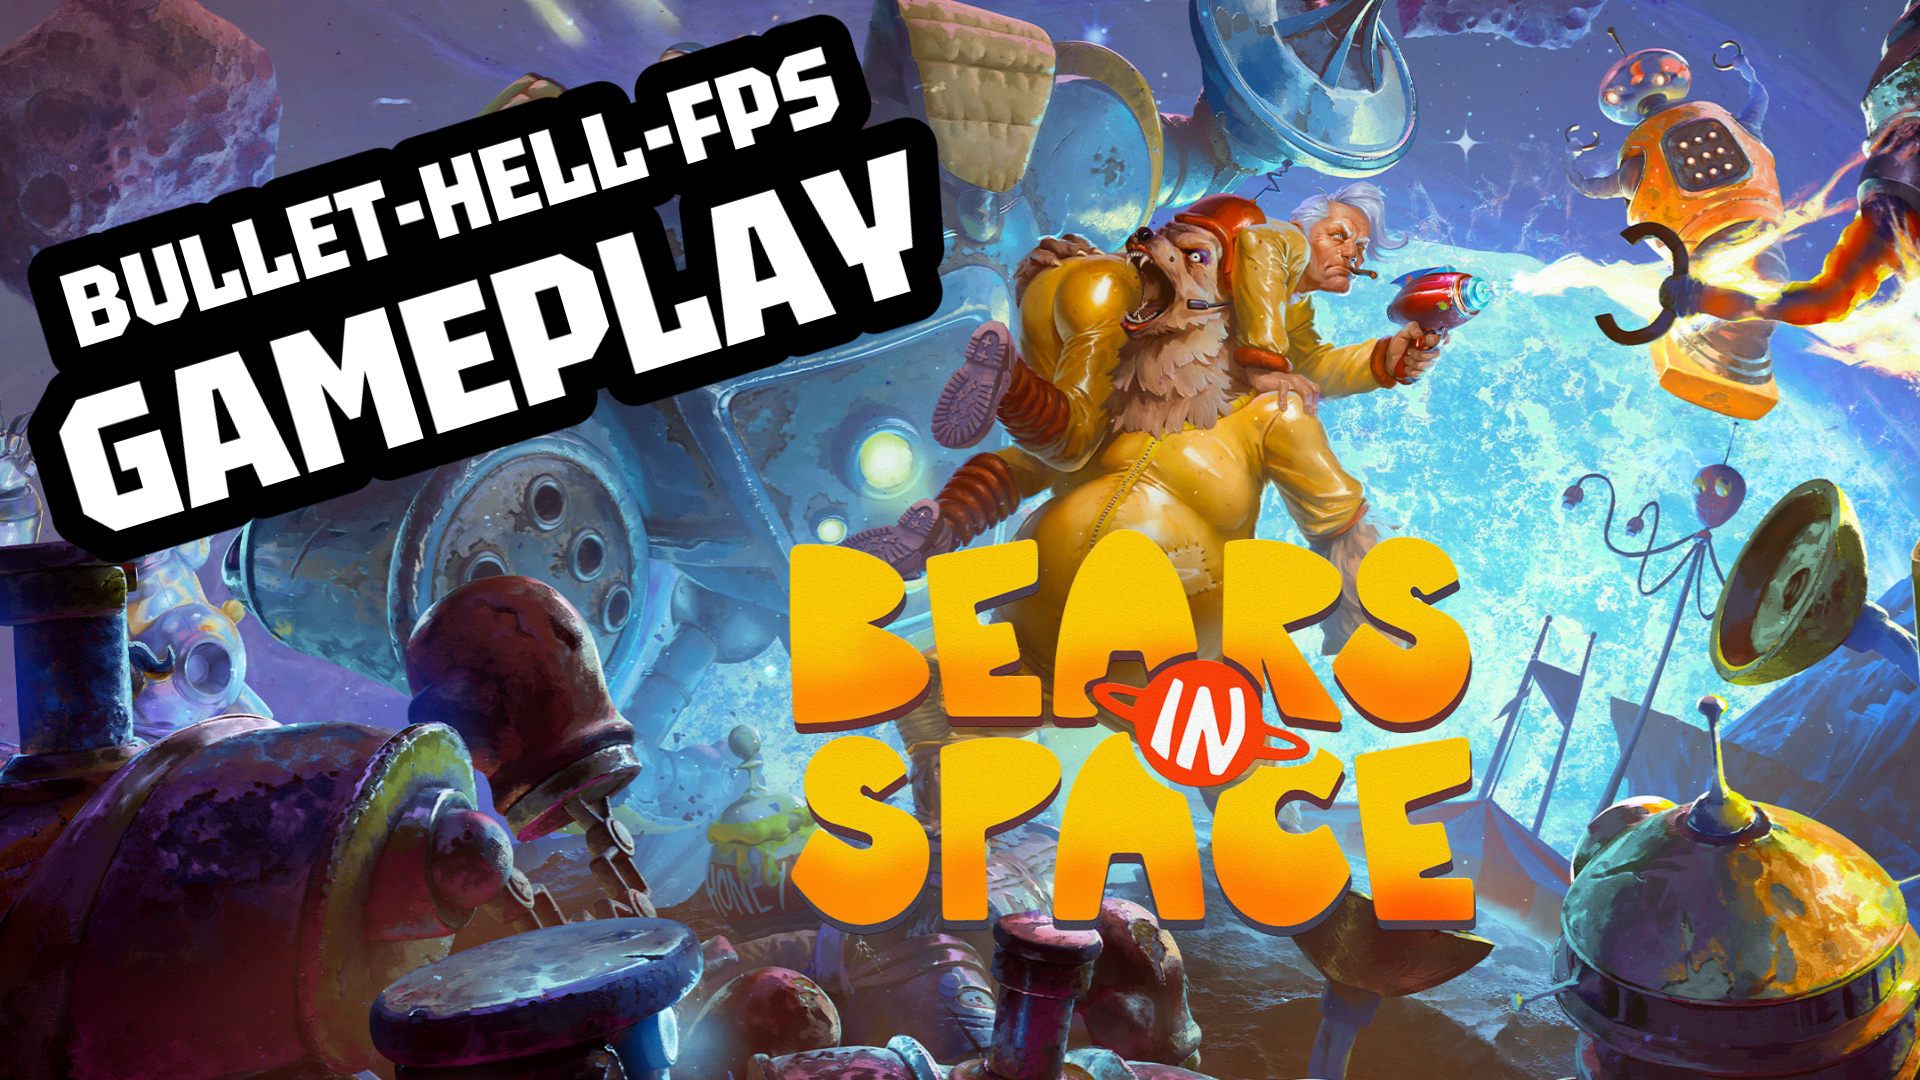 BULLET-HELL-FPS GAMEPLAY | BEARS IN SPACE #bearsinspace #fps #gameplay